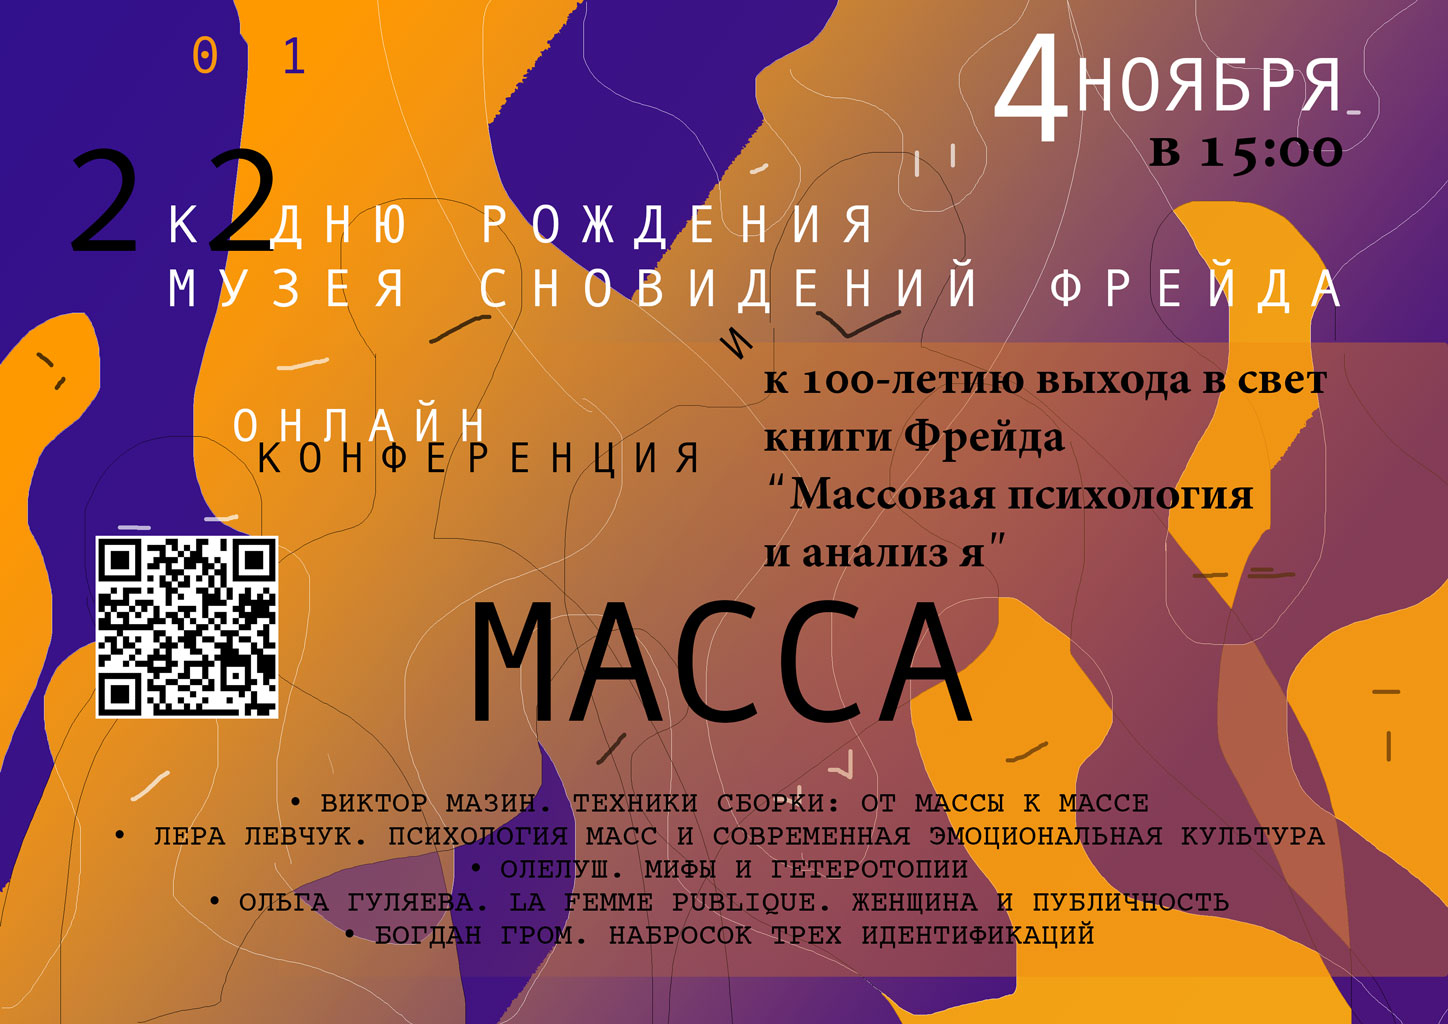 К 22-летию музея сновидений - онлайн-конференция «Масса»